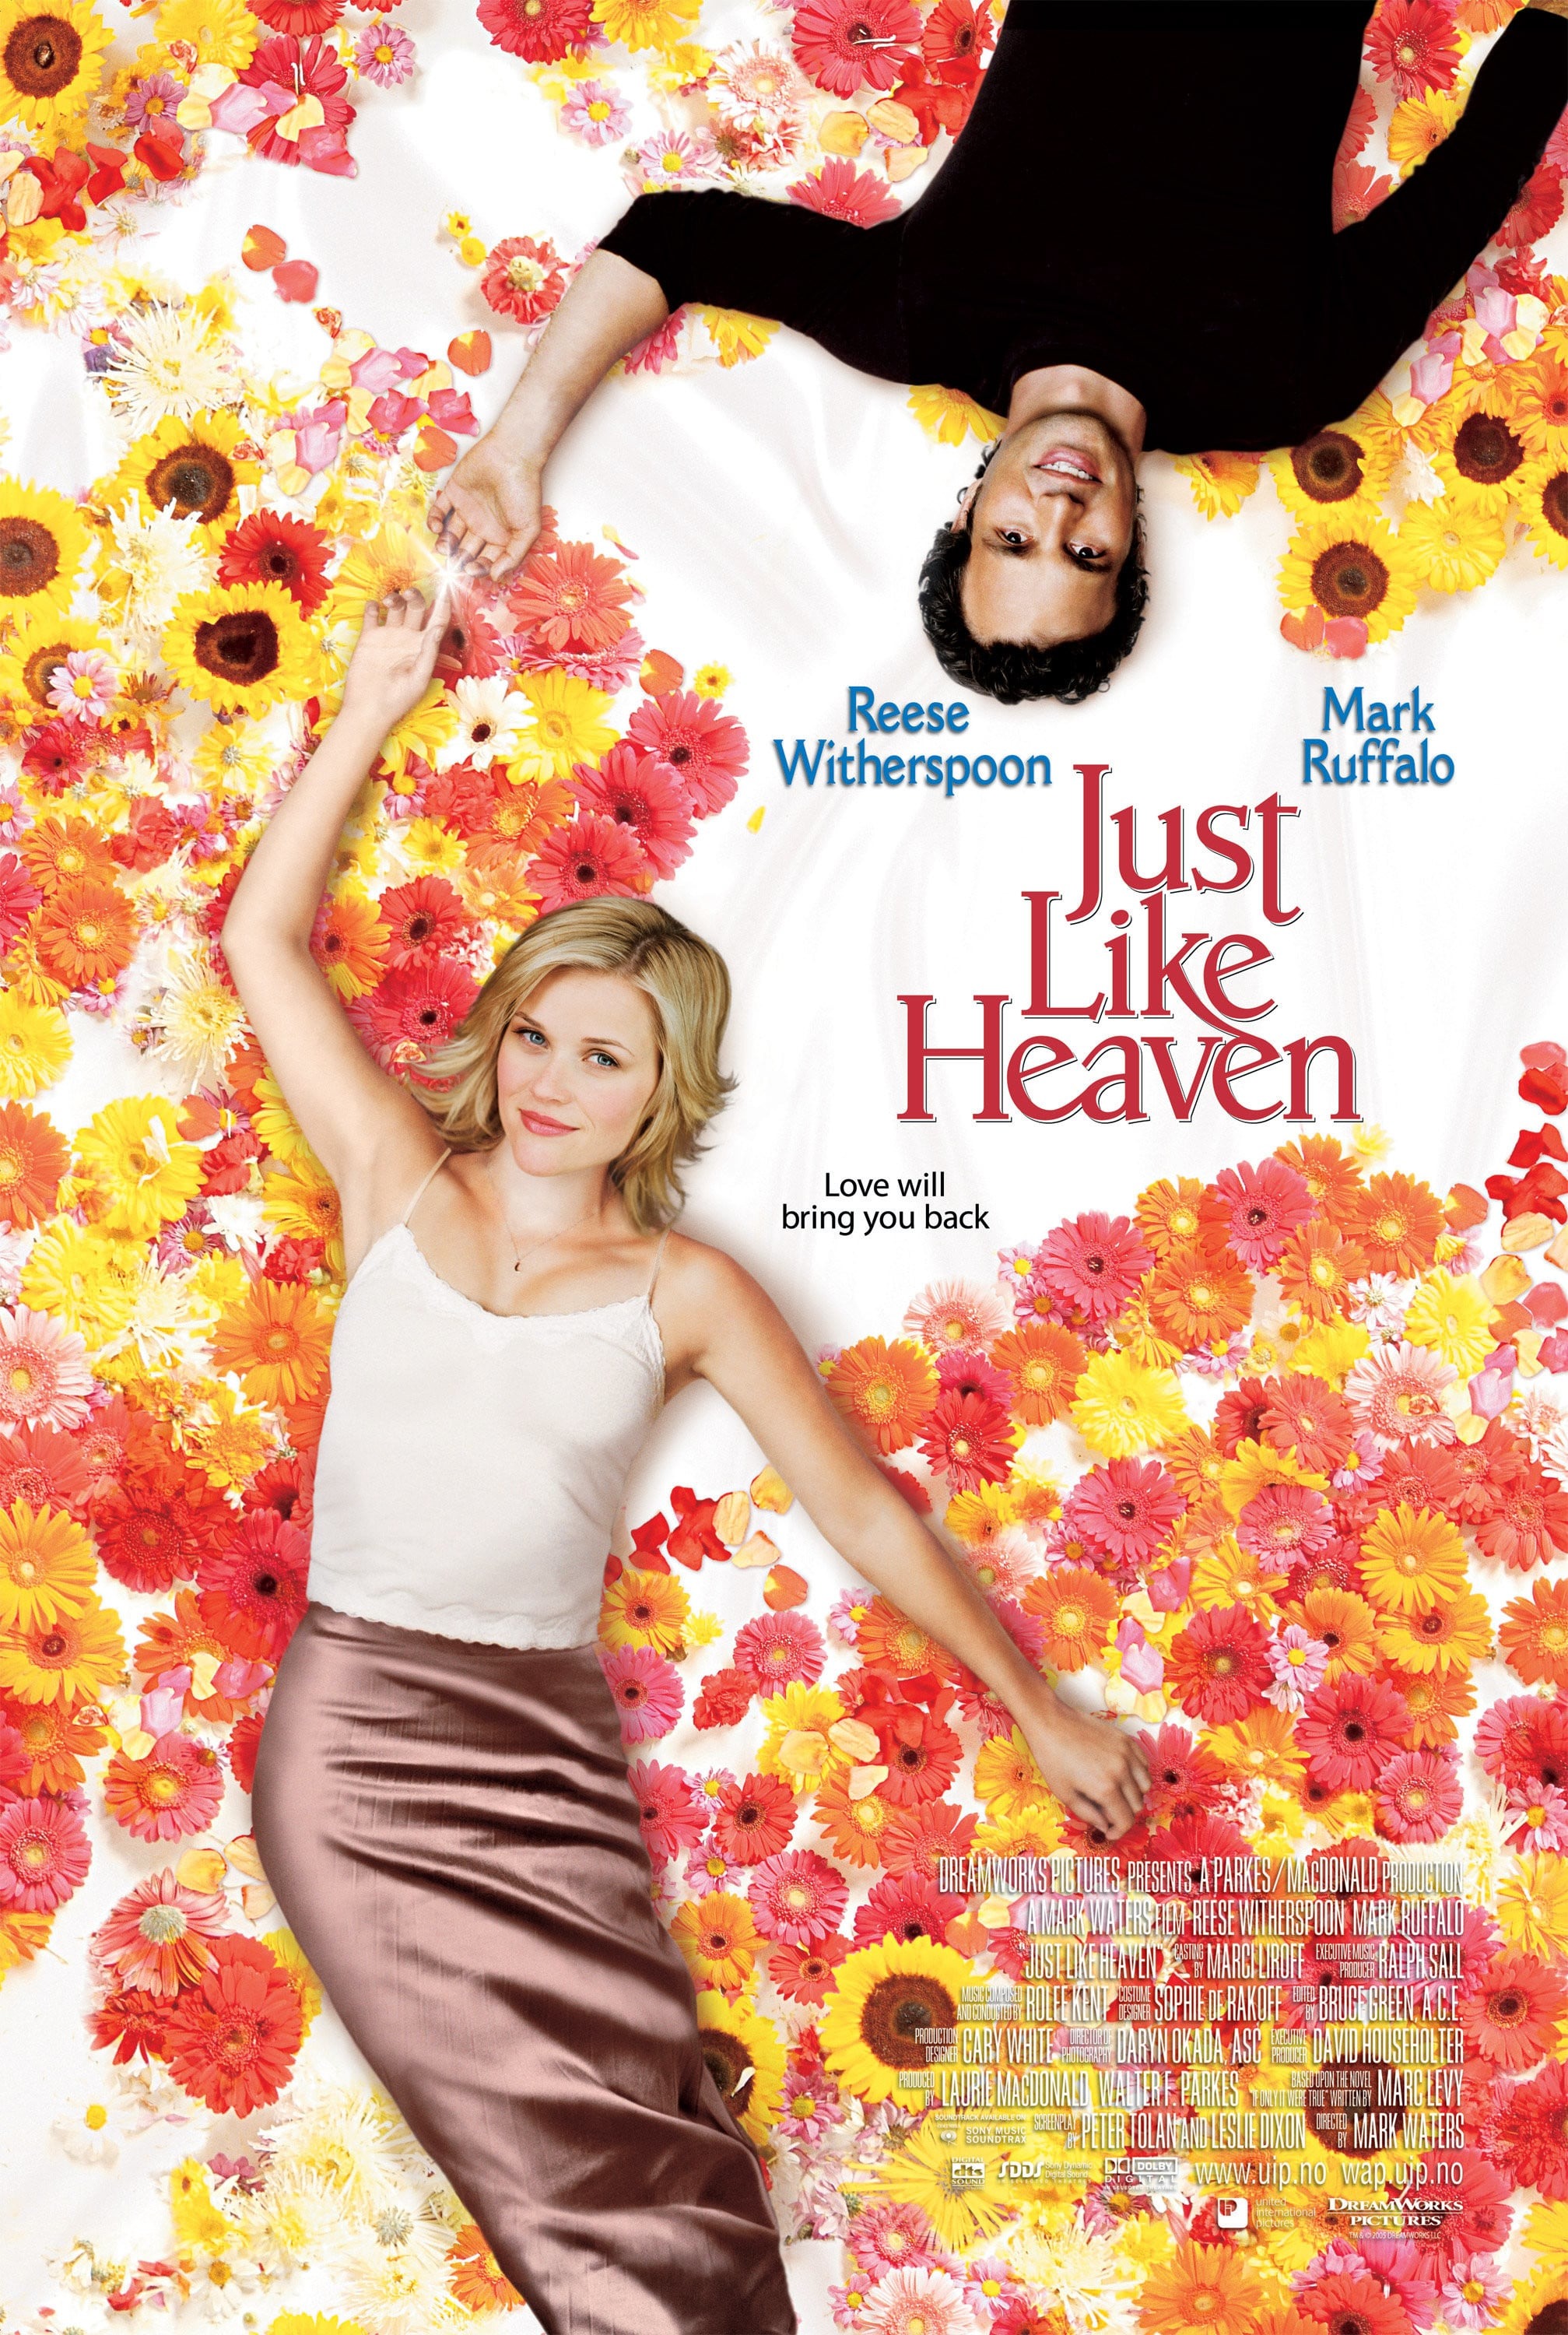 Just Like Heaven (4 of 4) Mega Sized Movie Poster Image IMP Awards